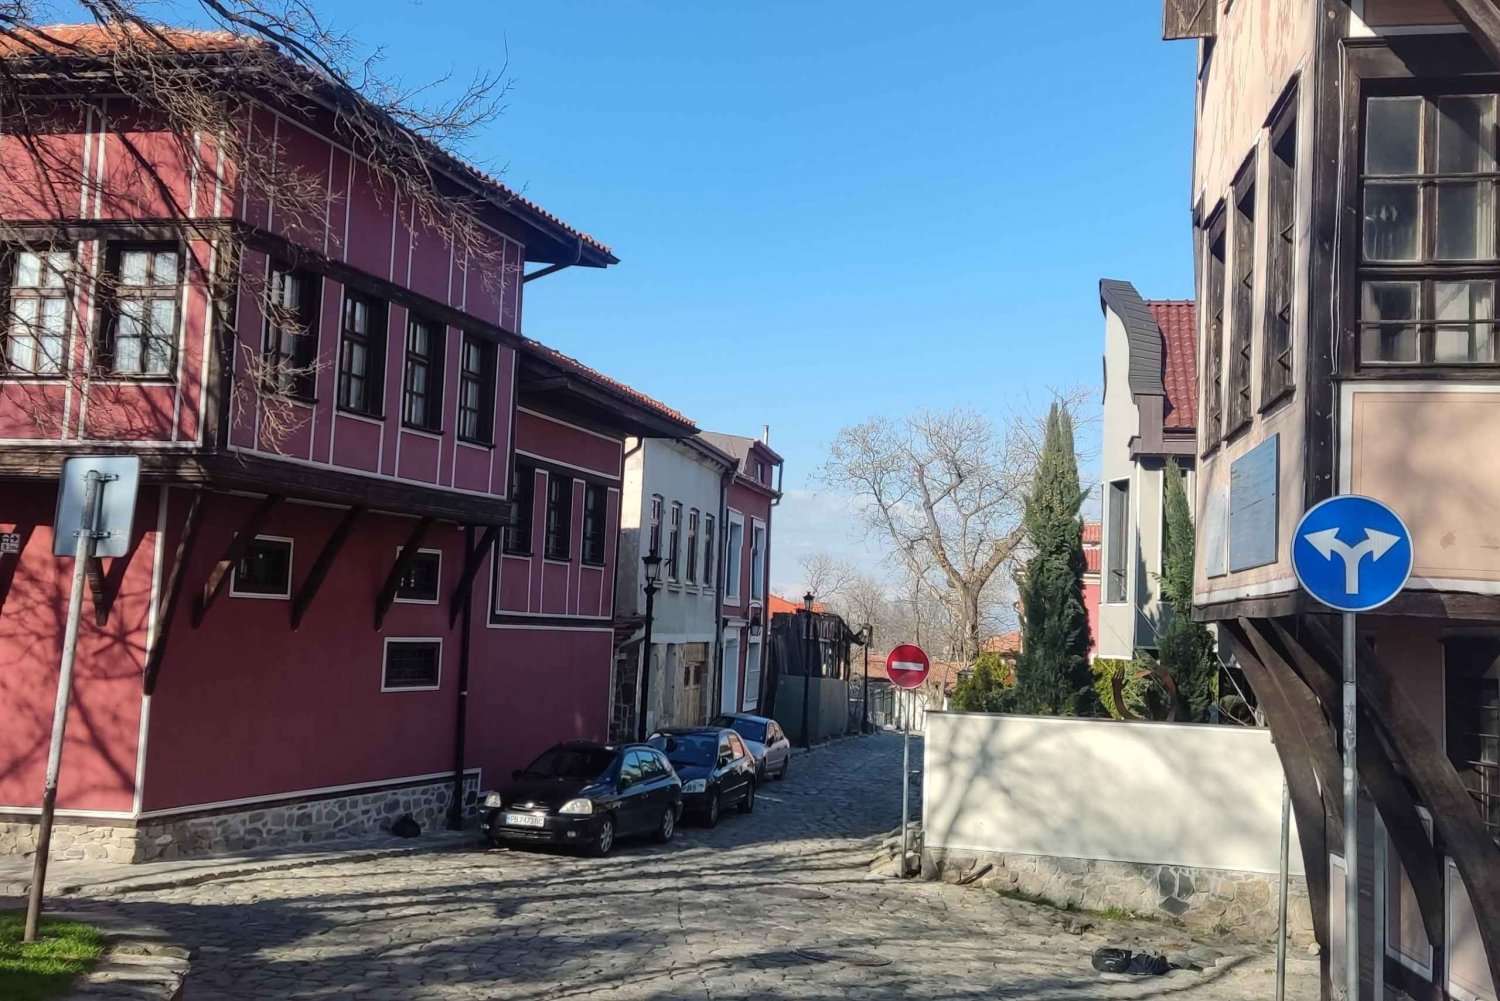 Plovdiv - judiskt arv endagstur från Sofia